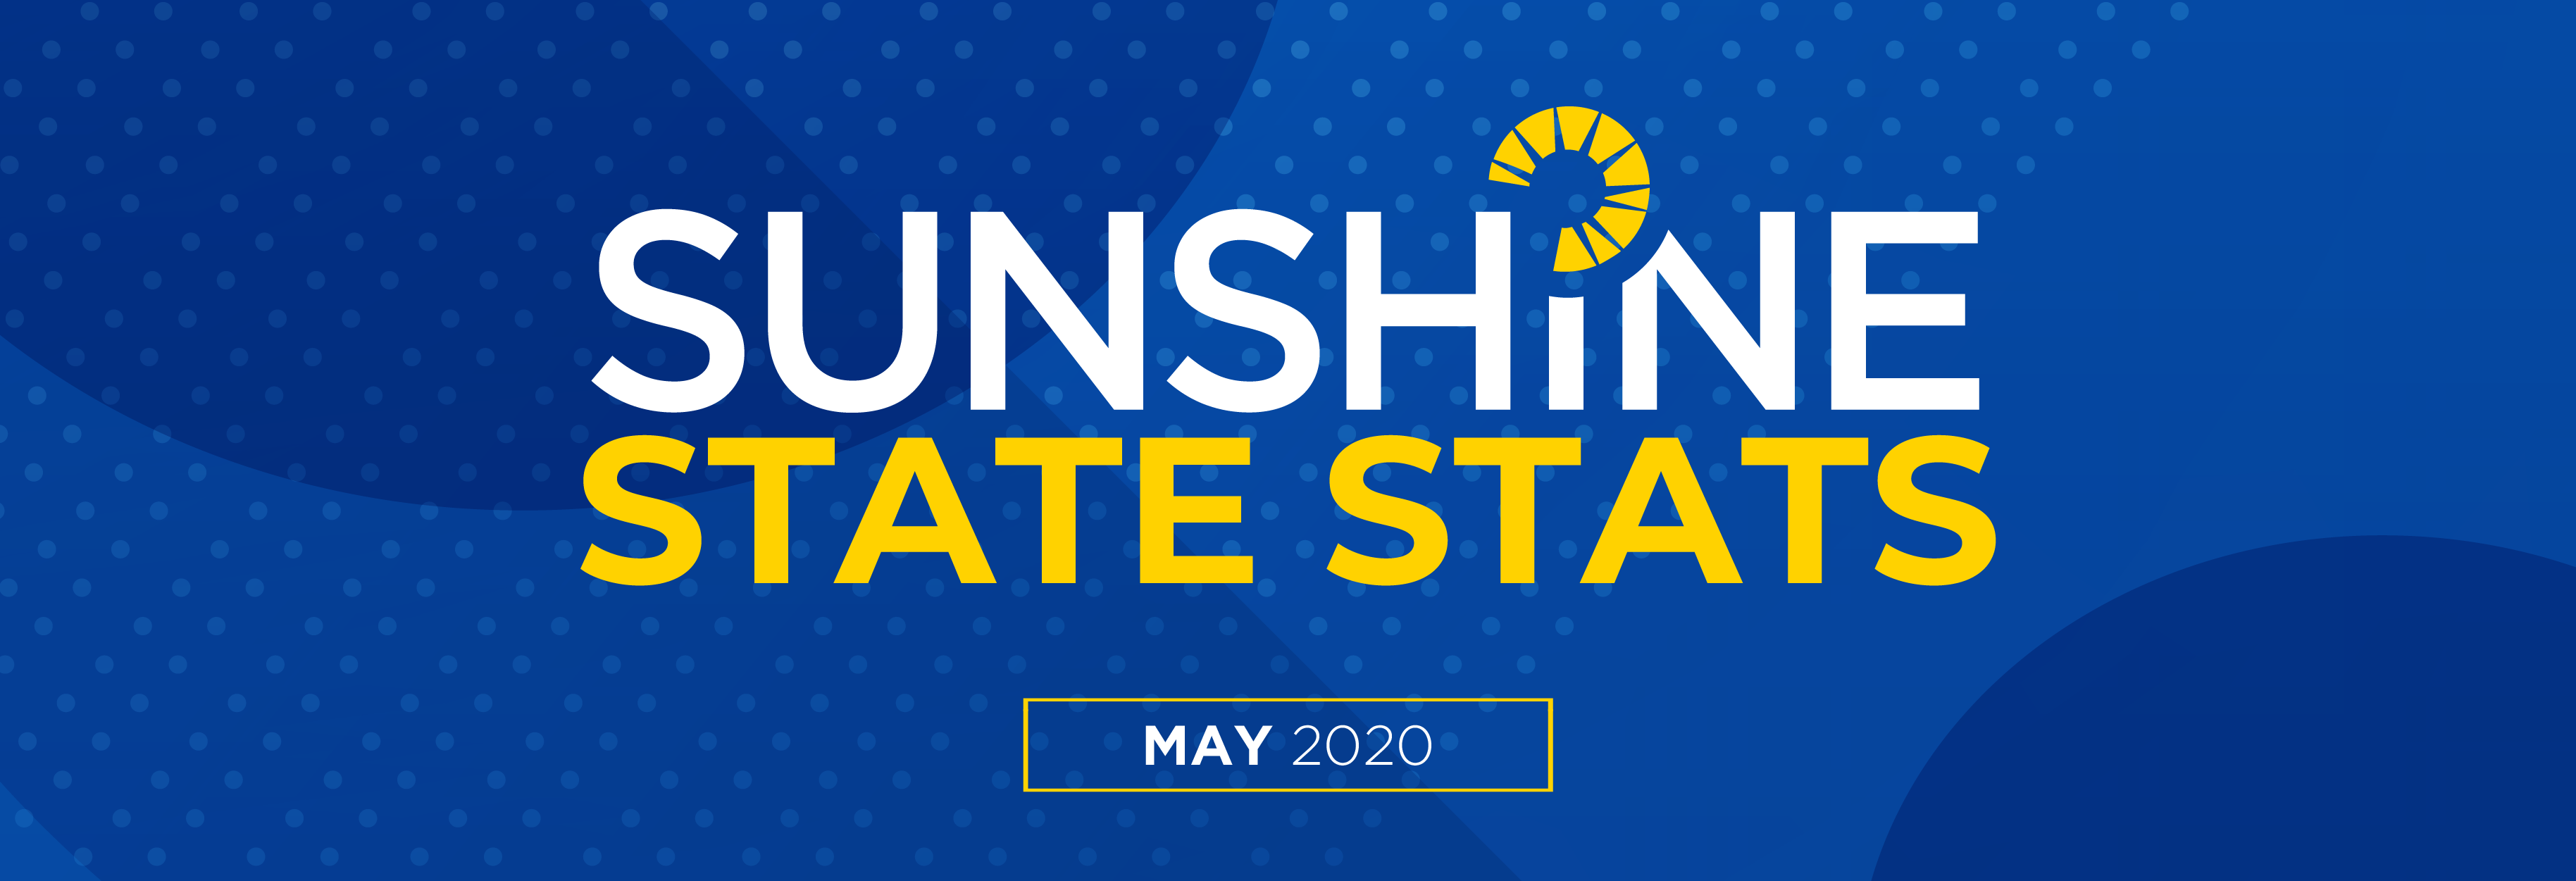 Sunshine State Stats May 2020